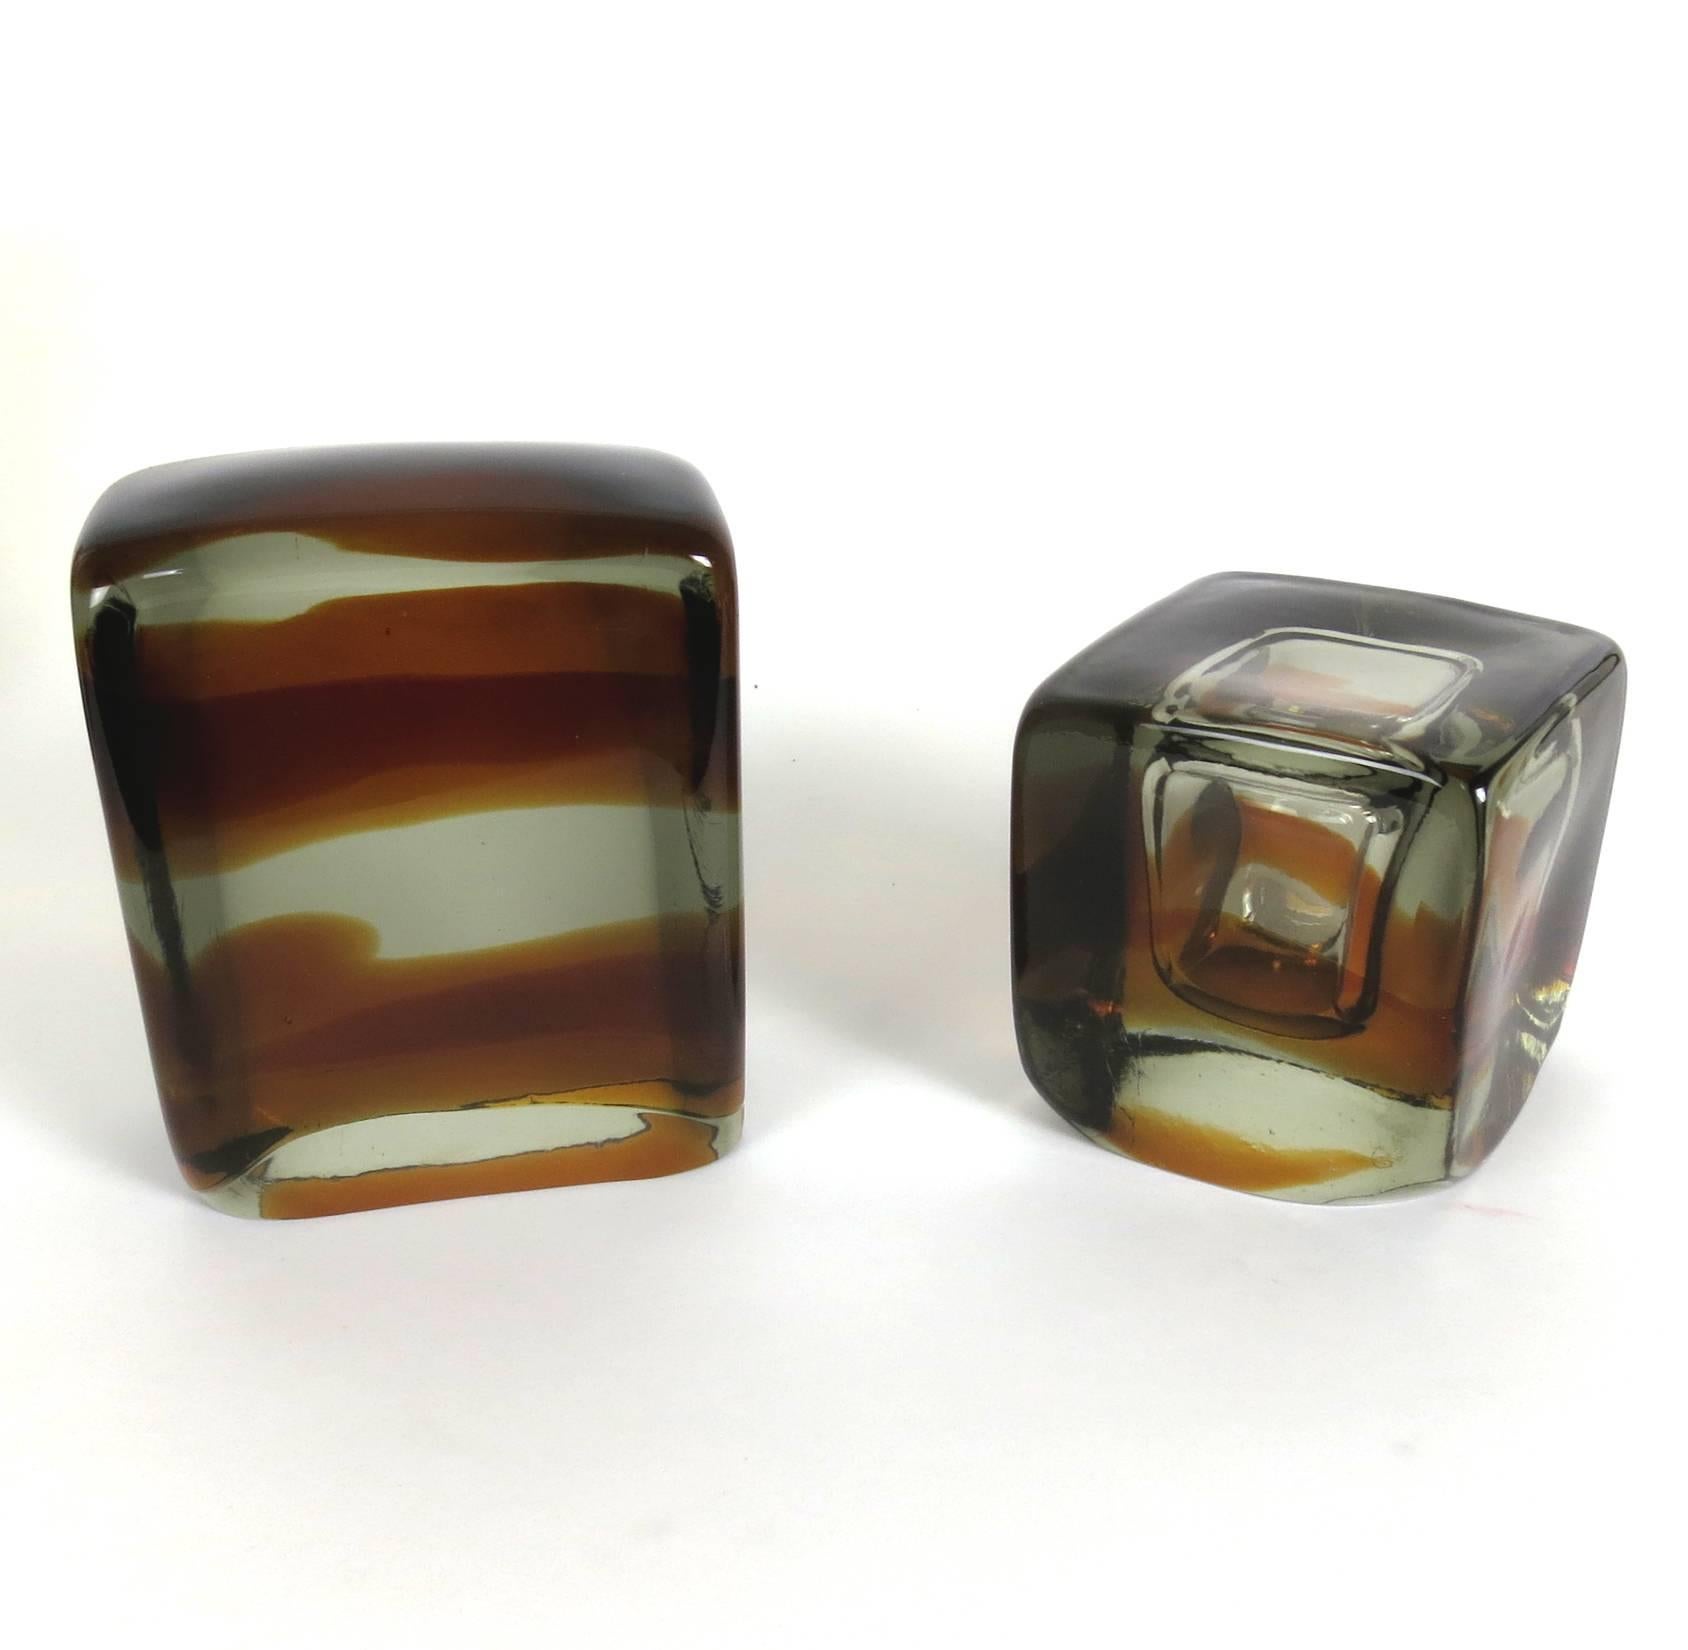 Une paire de serre-livres en verre de Murano, non marqués, en verre clair avec du verre ambré. L'un est un cube avec un vide de bulle, l'autre est une dalle rectangulaire. Mesures : 4.75